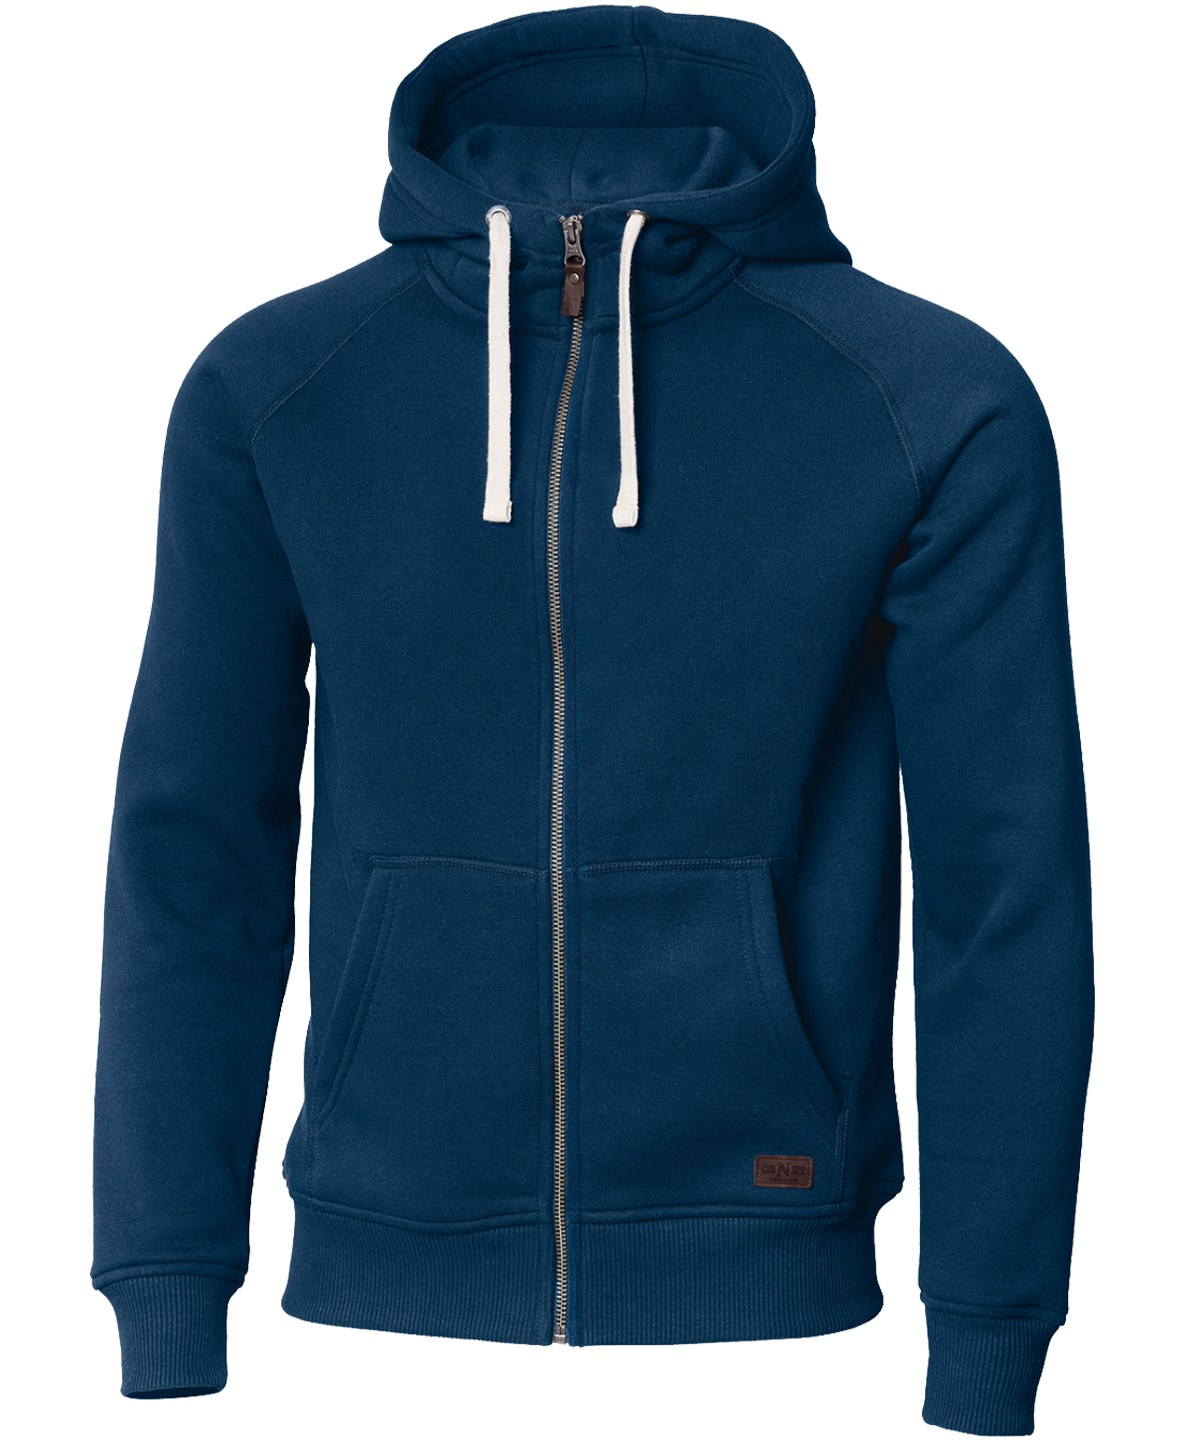 Williamsburg – fashionable hooded sweatshirt